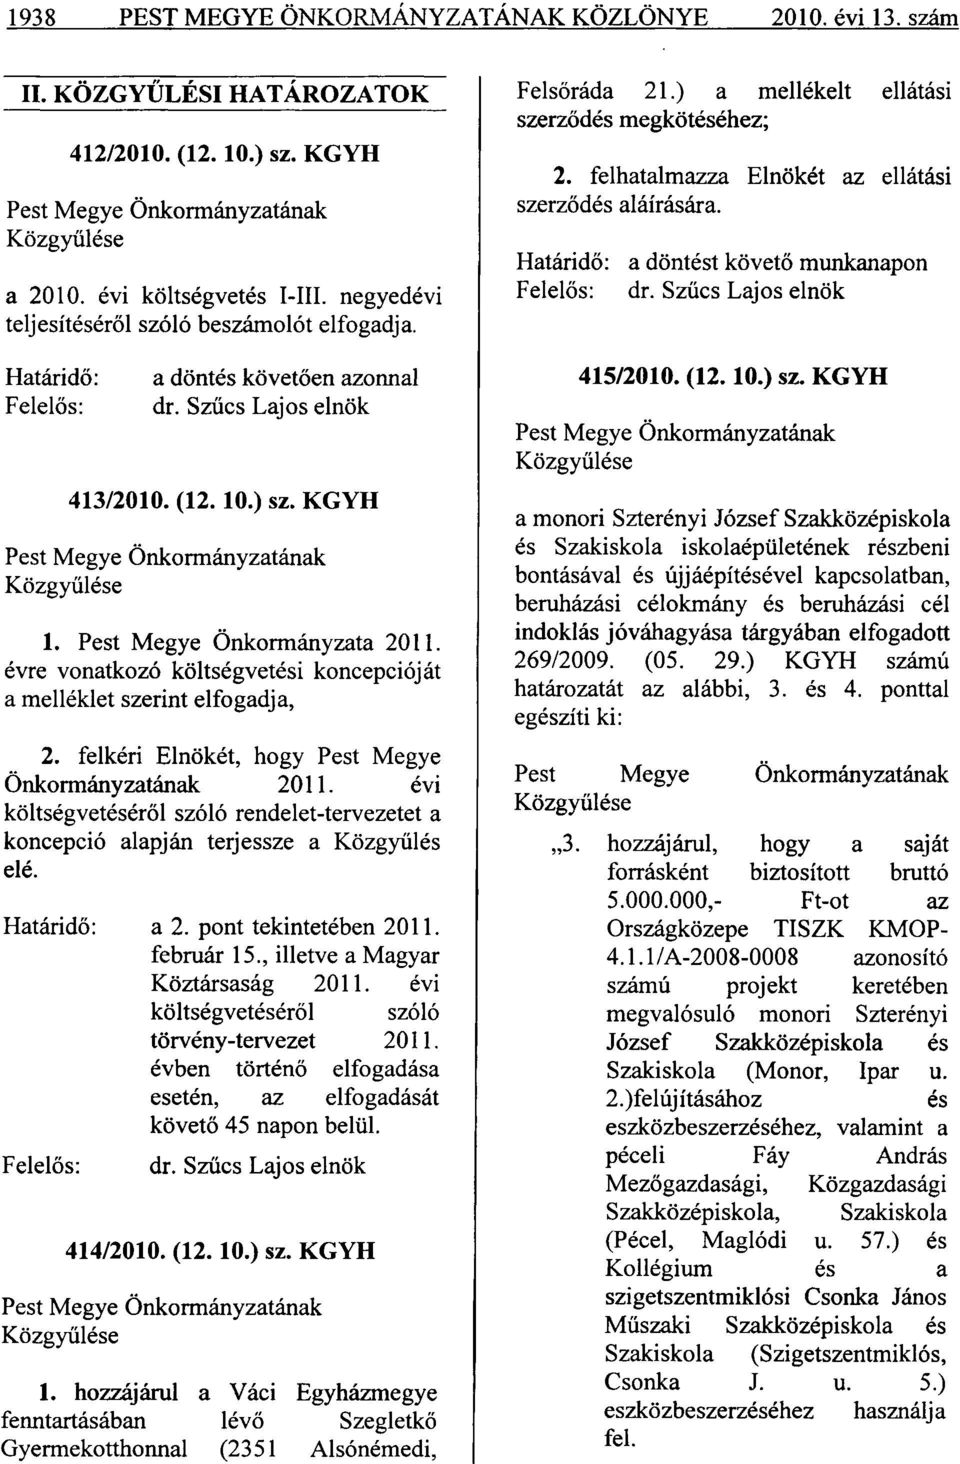 Pest Megye Önkormányzata 2011. évre vonatkozó költségvetési koncepcióját a melléklet szerint elfogadja, 2. felkéri Elnökét, hogy Pest Megye Önkormányzatának 2011.